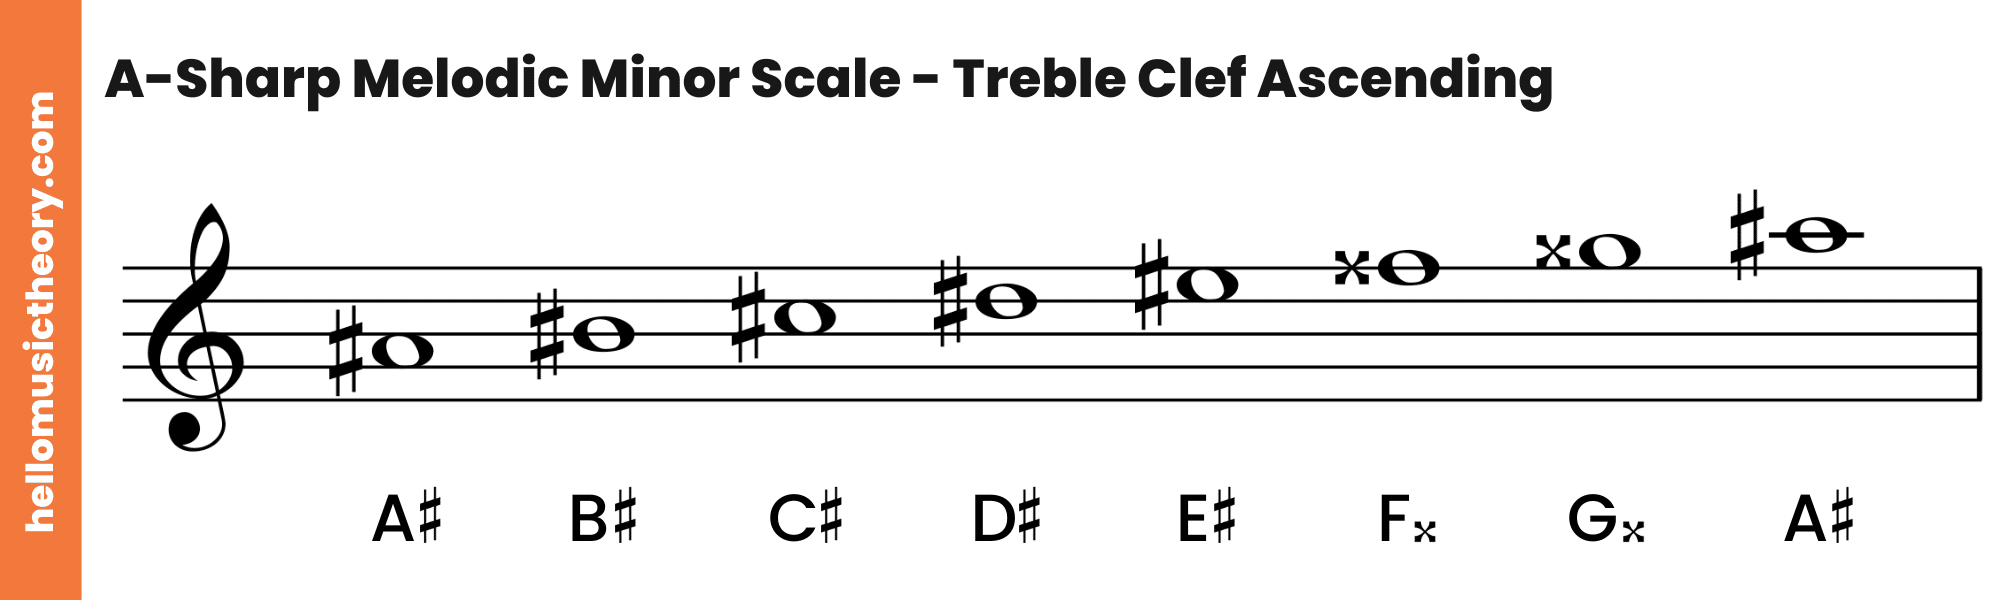 A-Sharp Melodic Minor Scale Treble Clef Ascending